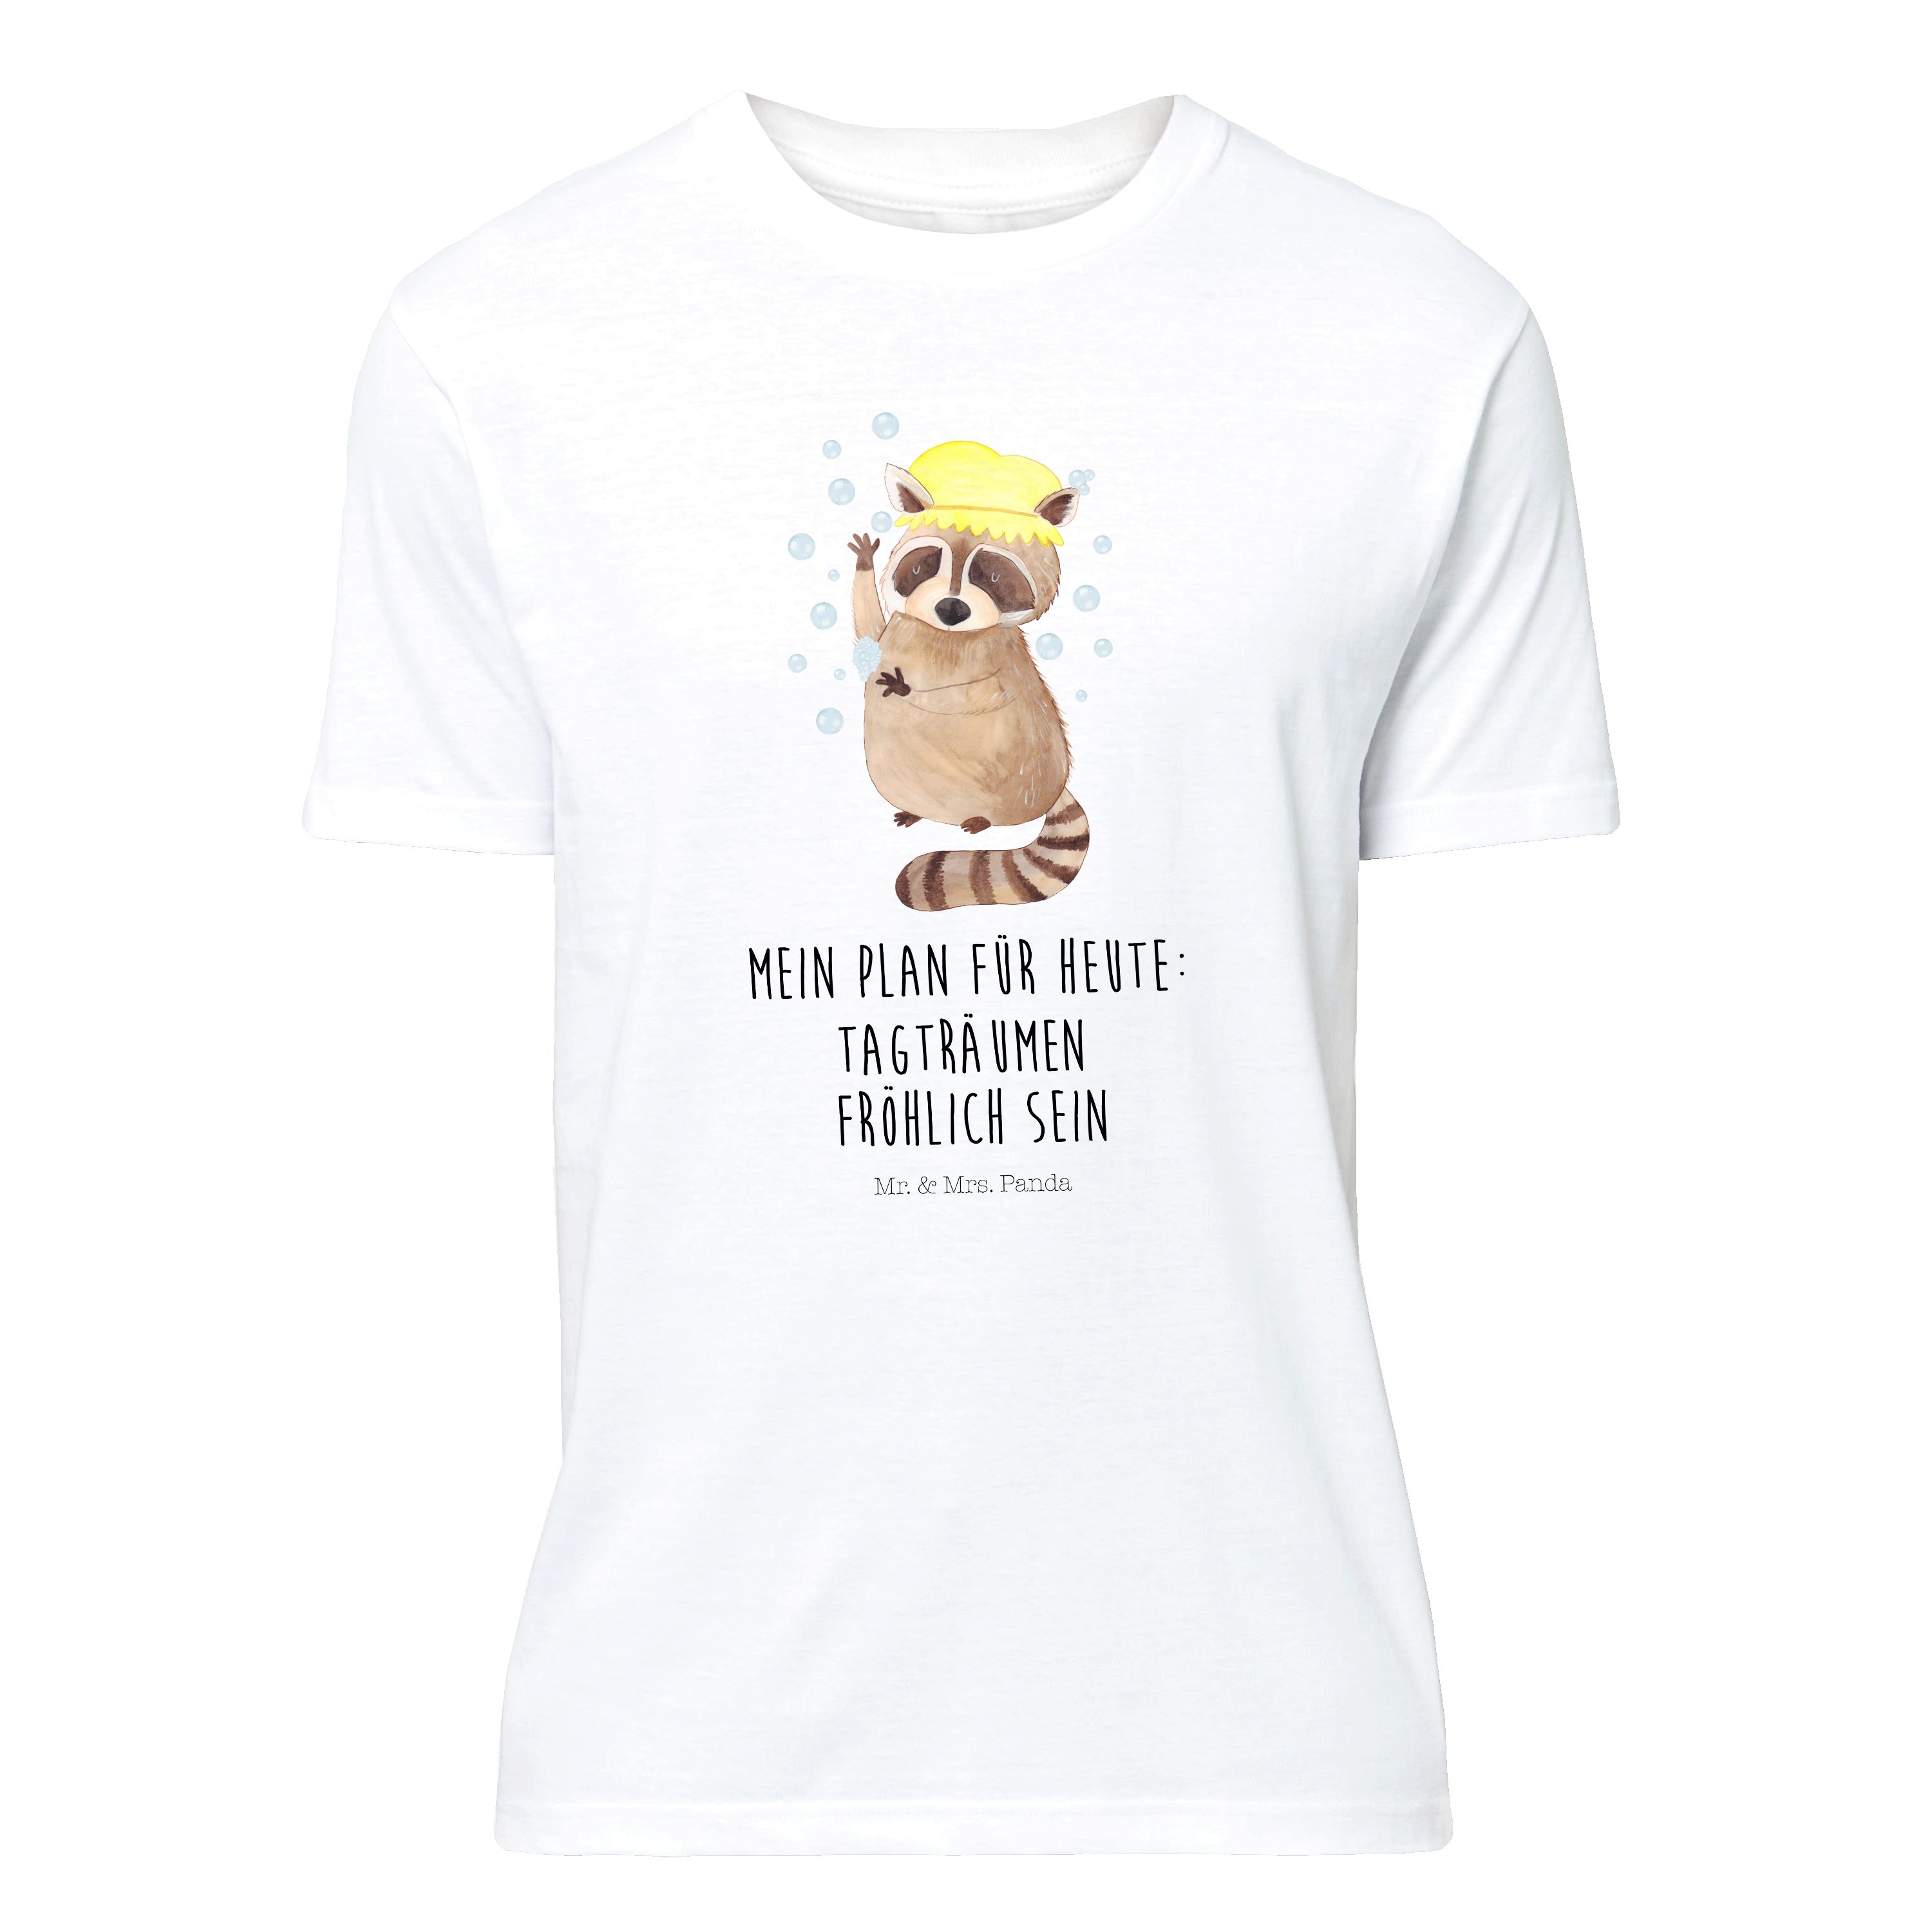 Mr. & Mrs. Panda T-Shirt Waschbär - Weiß - Geschenk, Fröhlich, Männer, Tagträumen, Seifenblase (1-tlg)